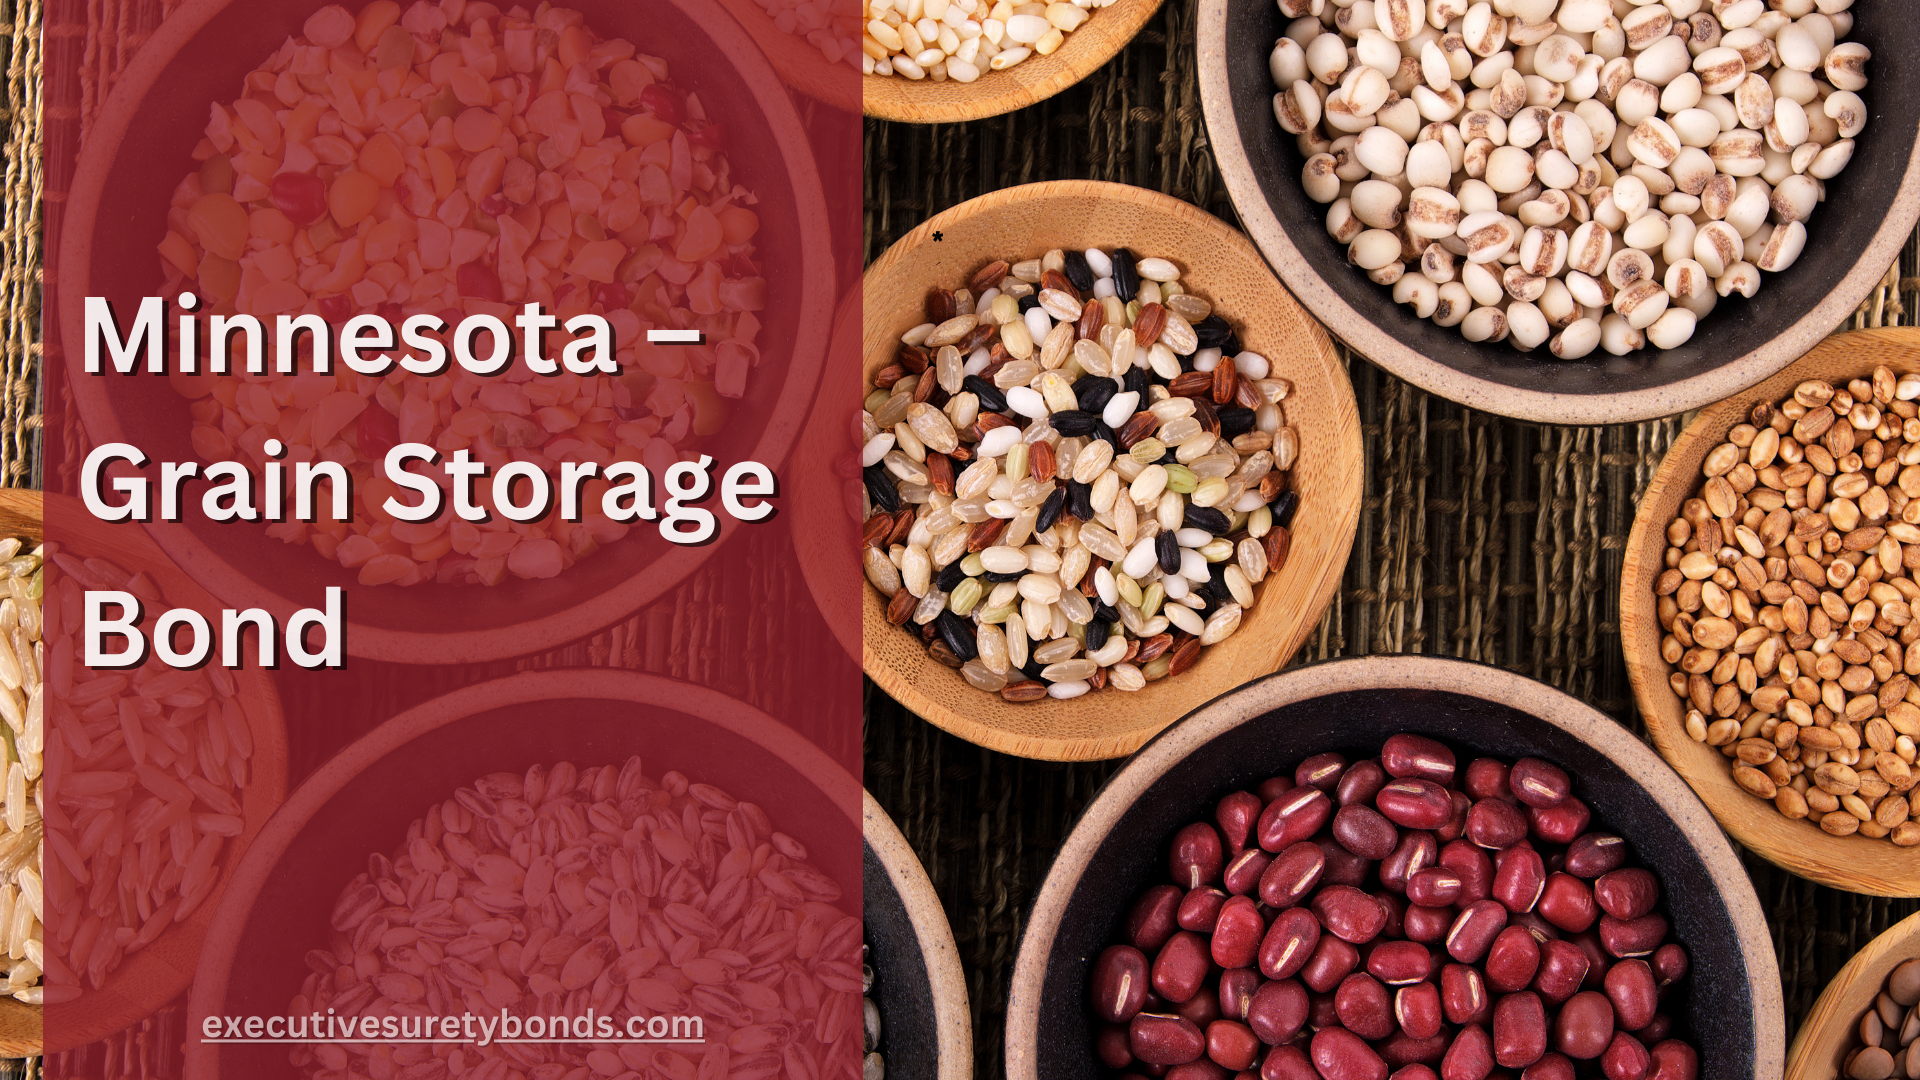 Minnesota – Grain Storage Bond